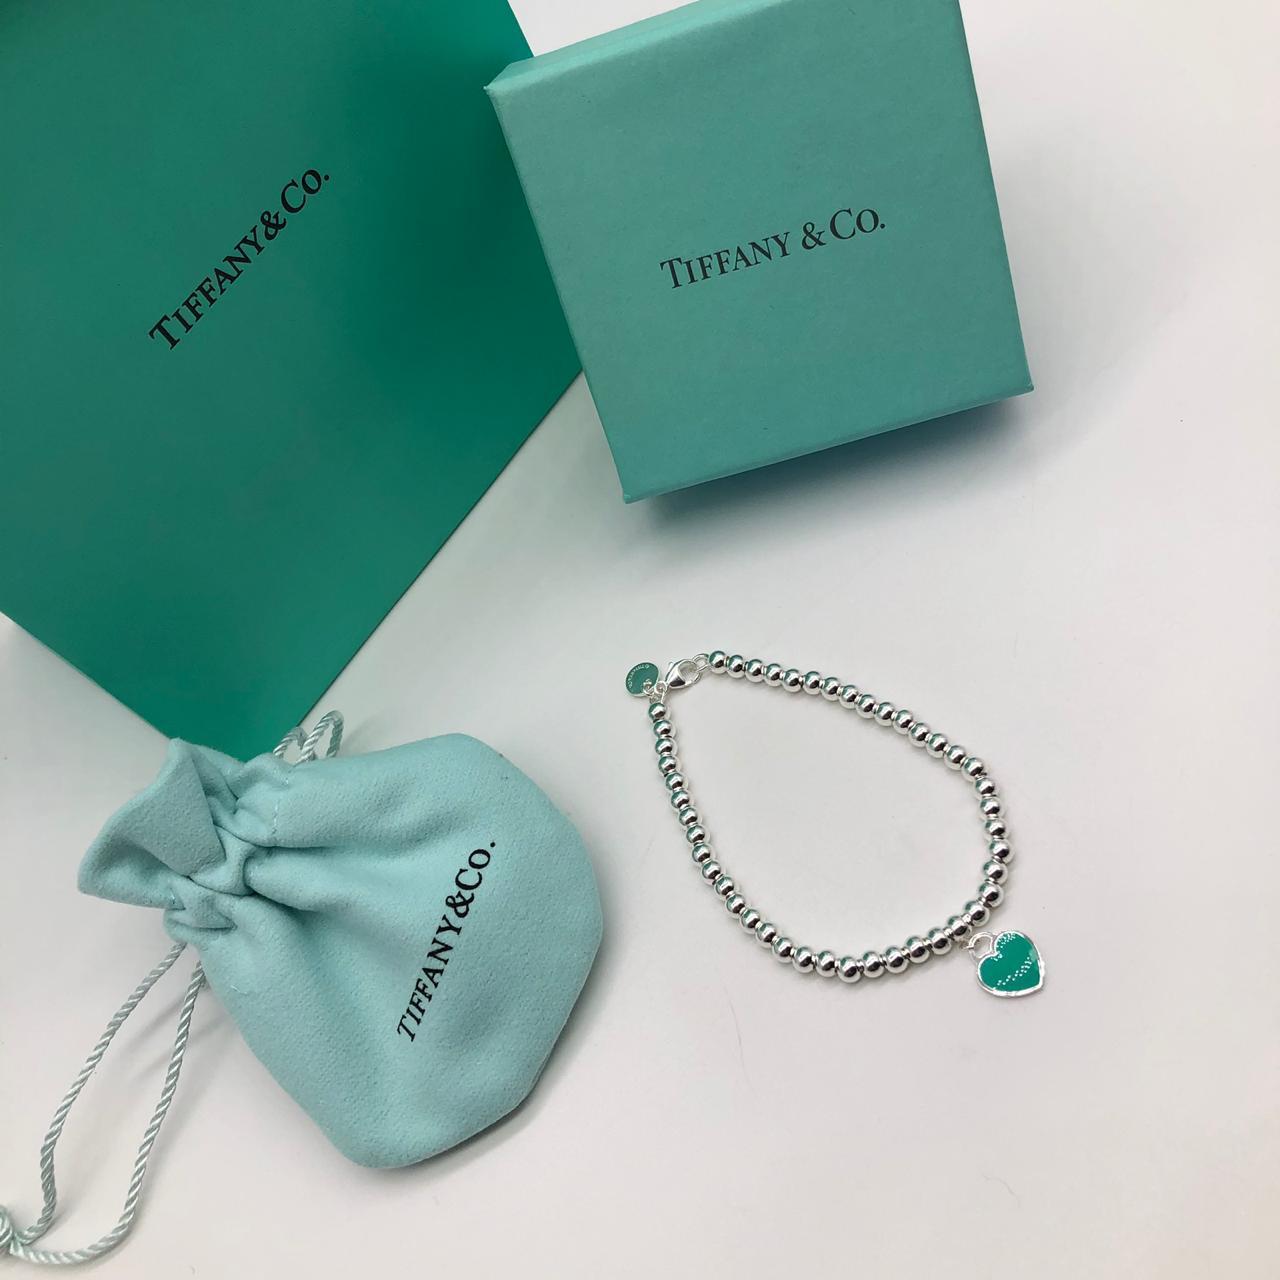 Купить серебряный браслеты Tiffany со скидкой 40%